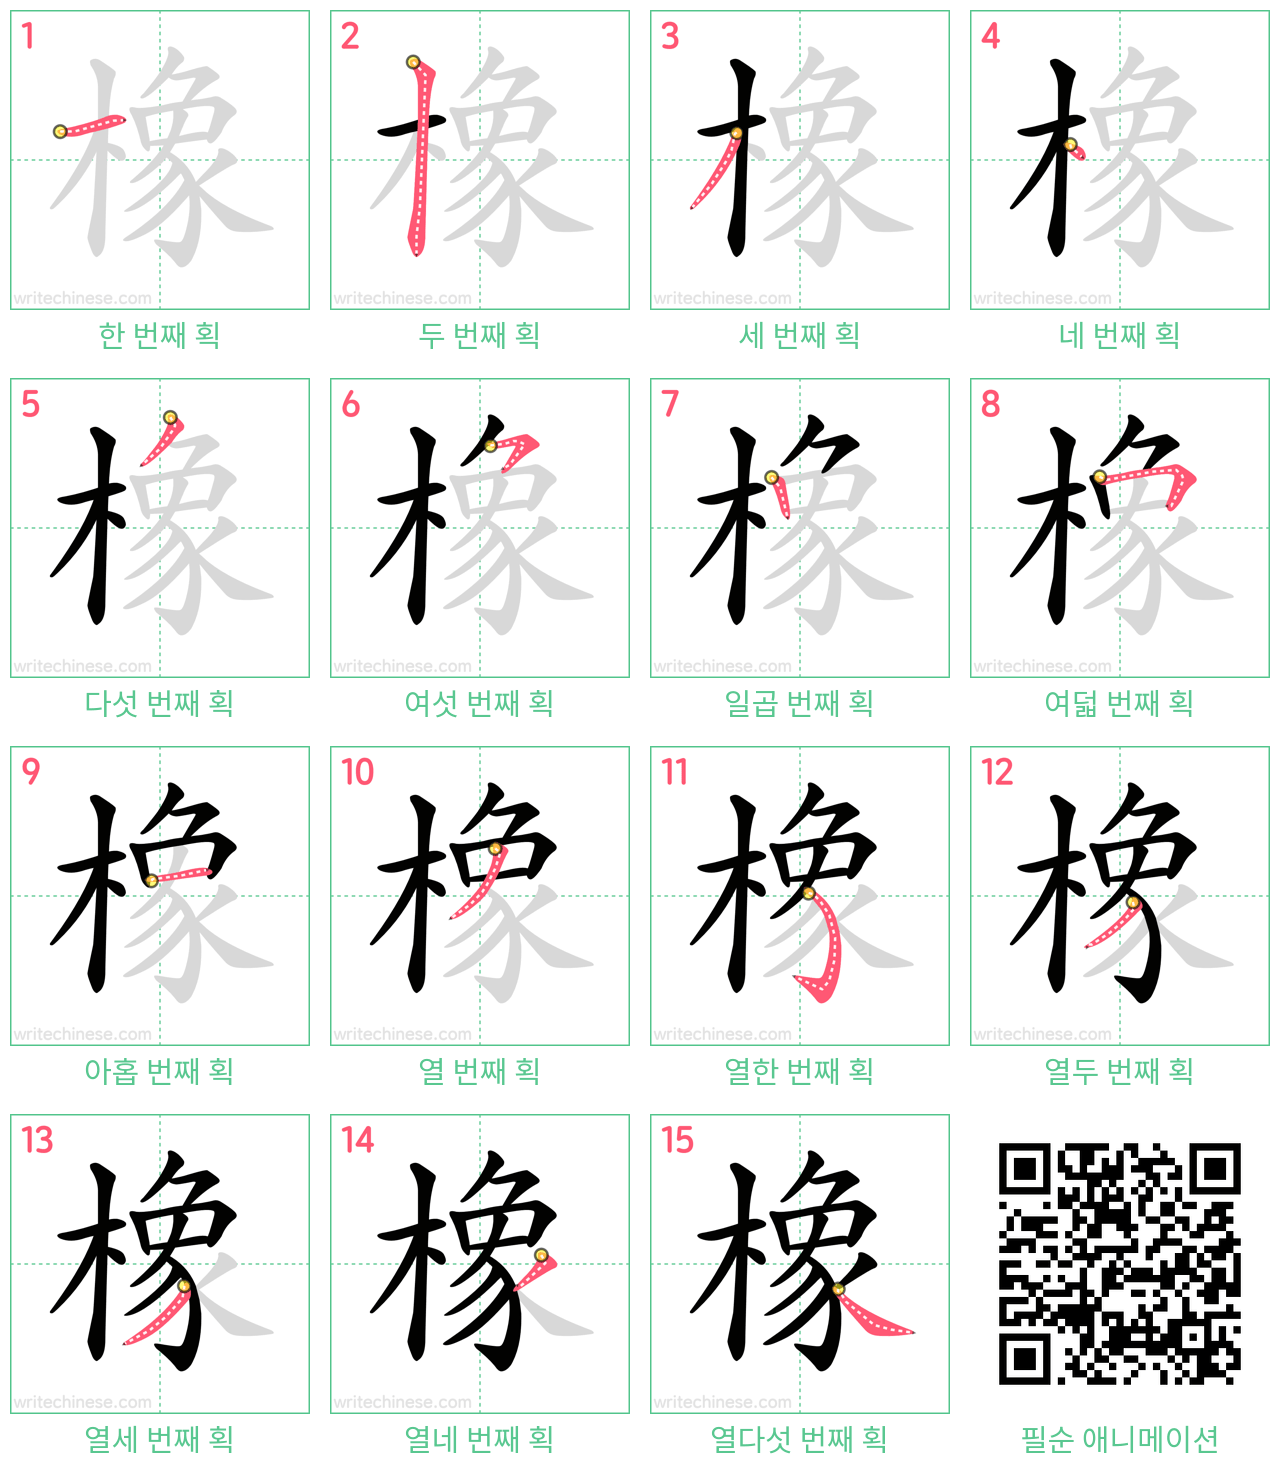 橡 step-by-step stroke order diagrams